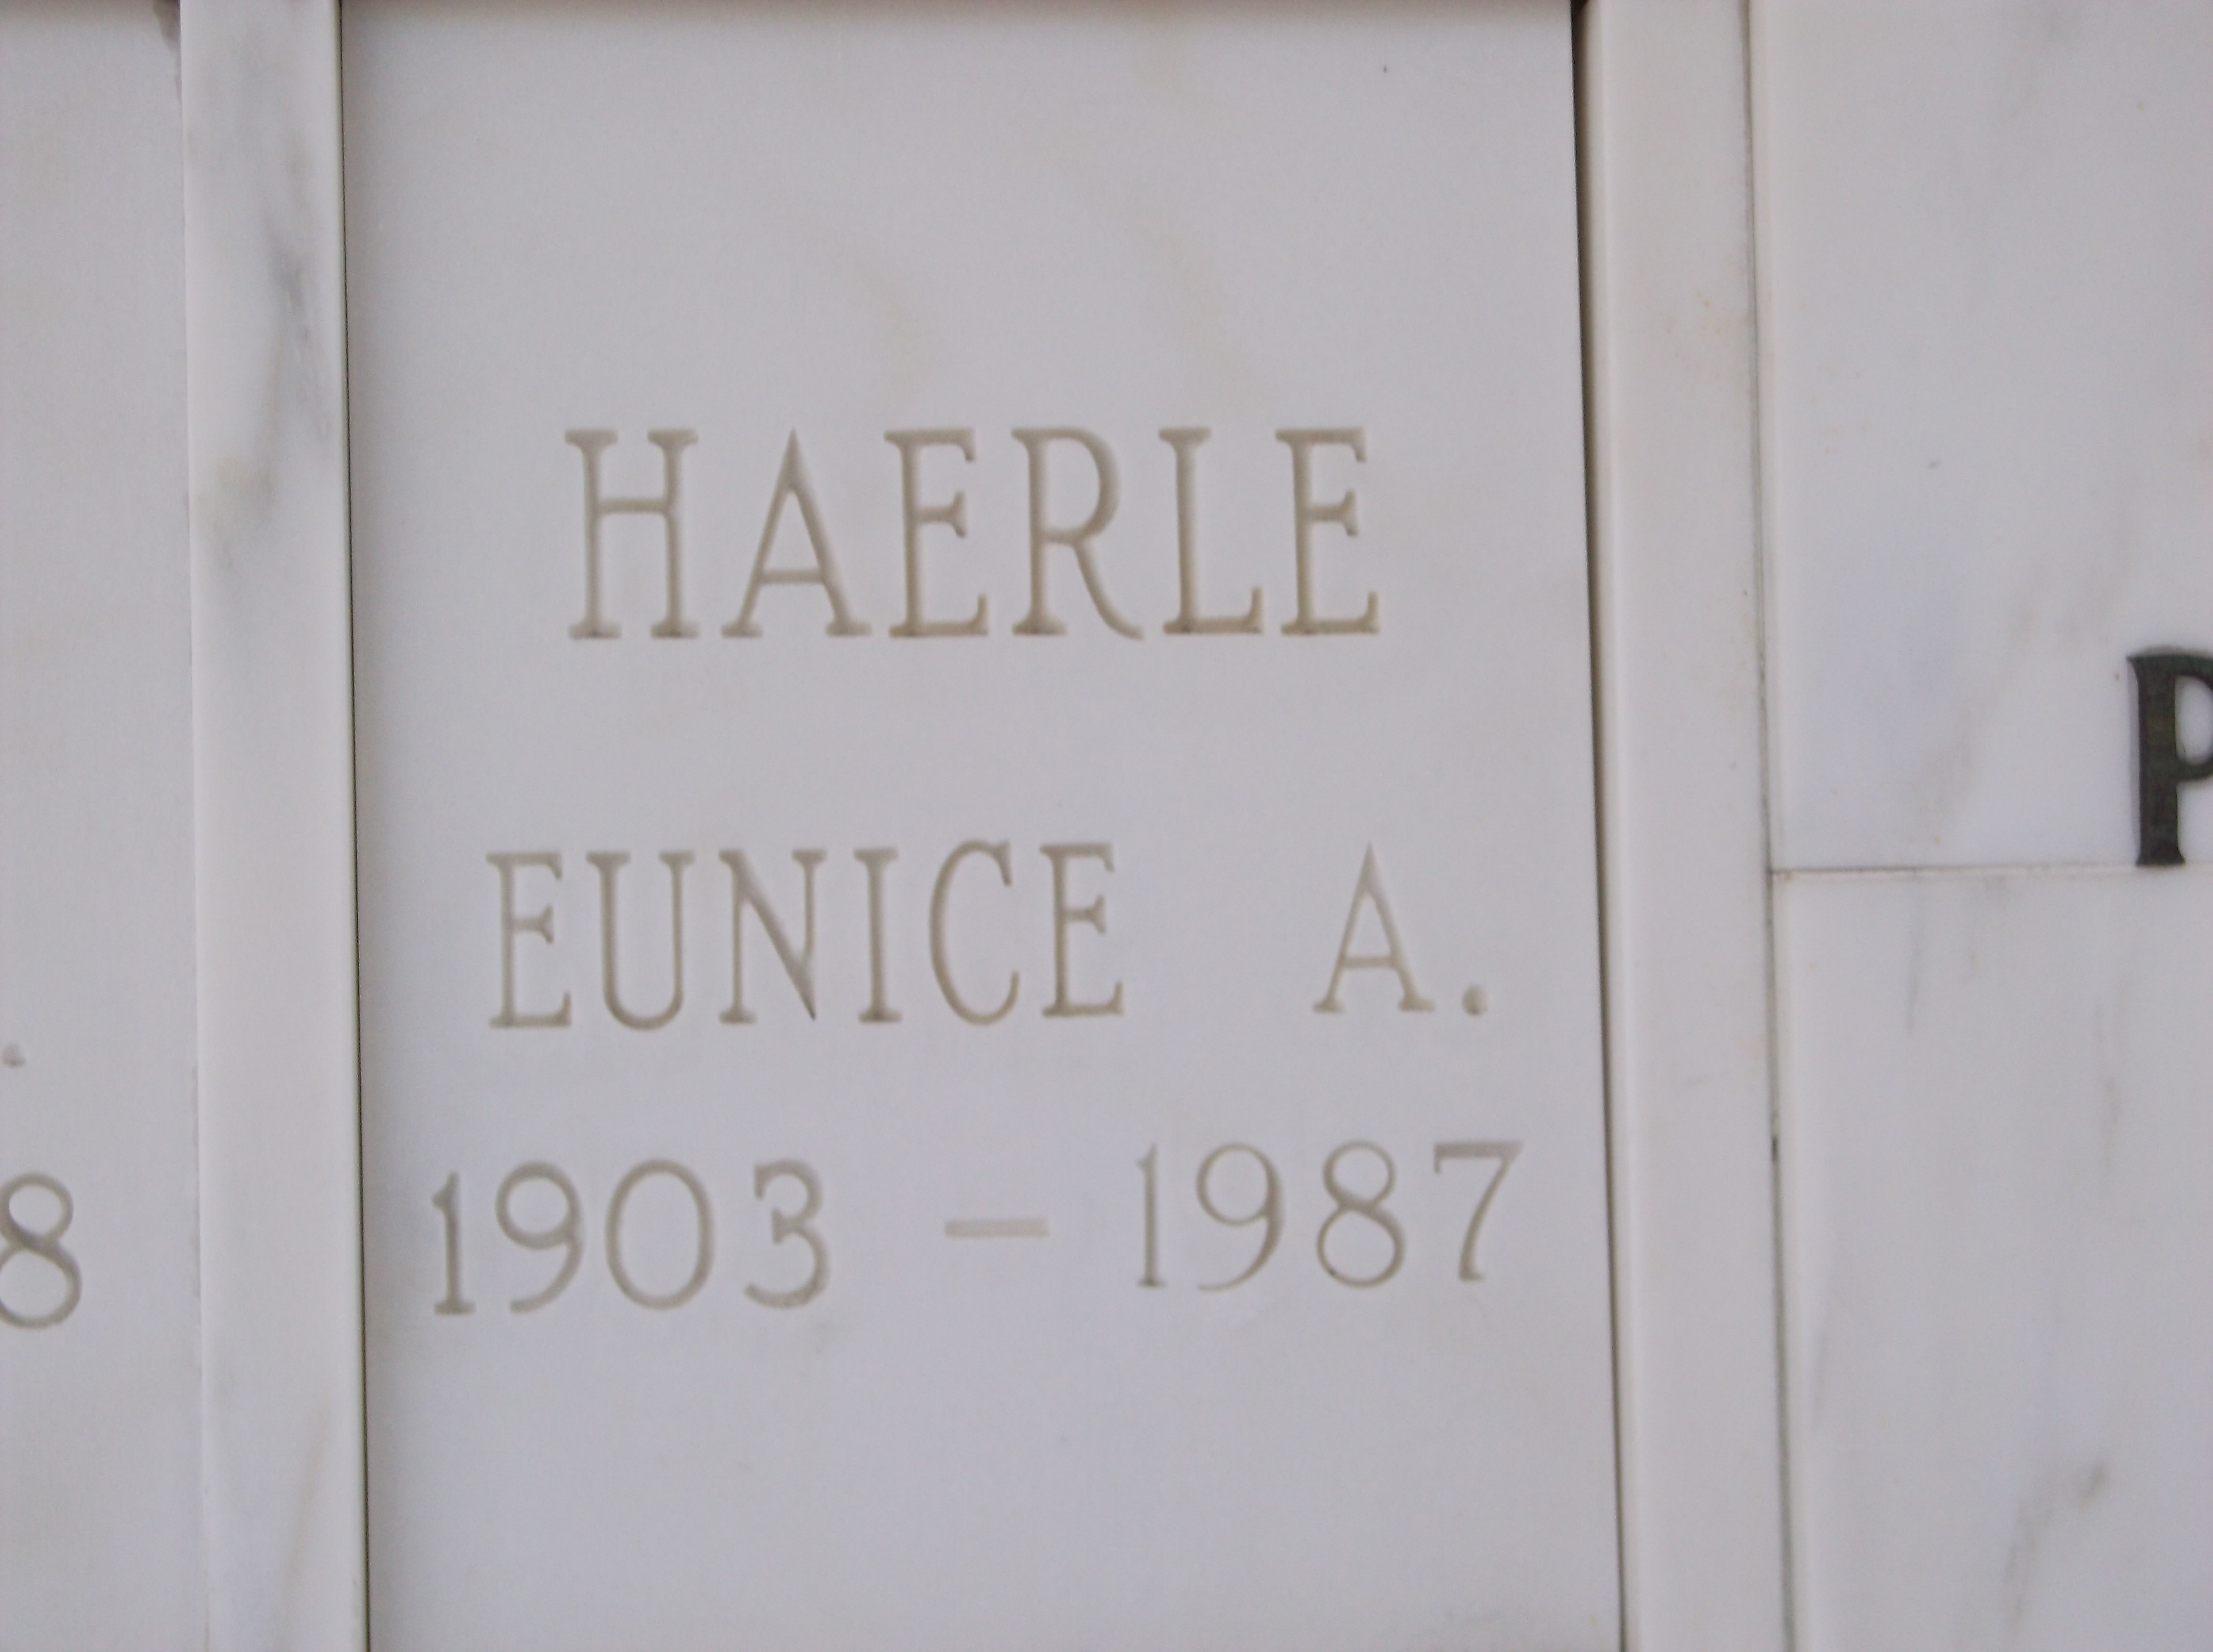 Eunice A Haerle